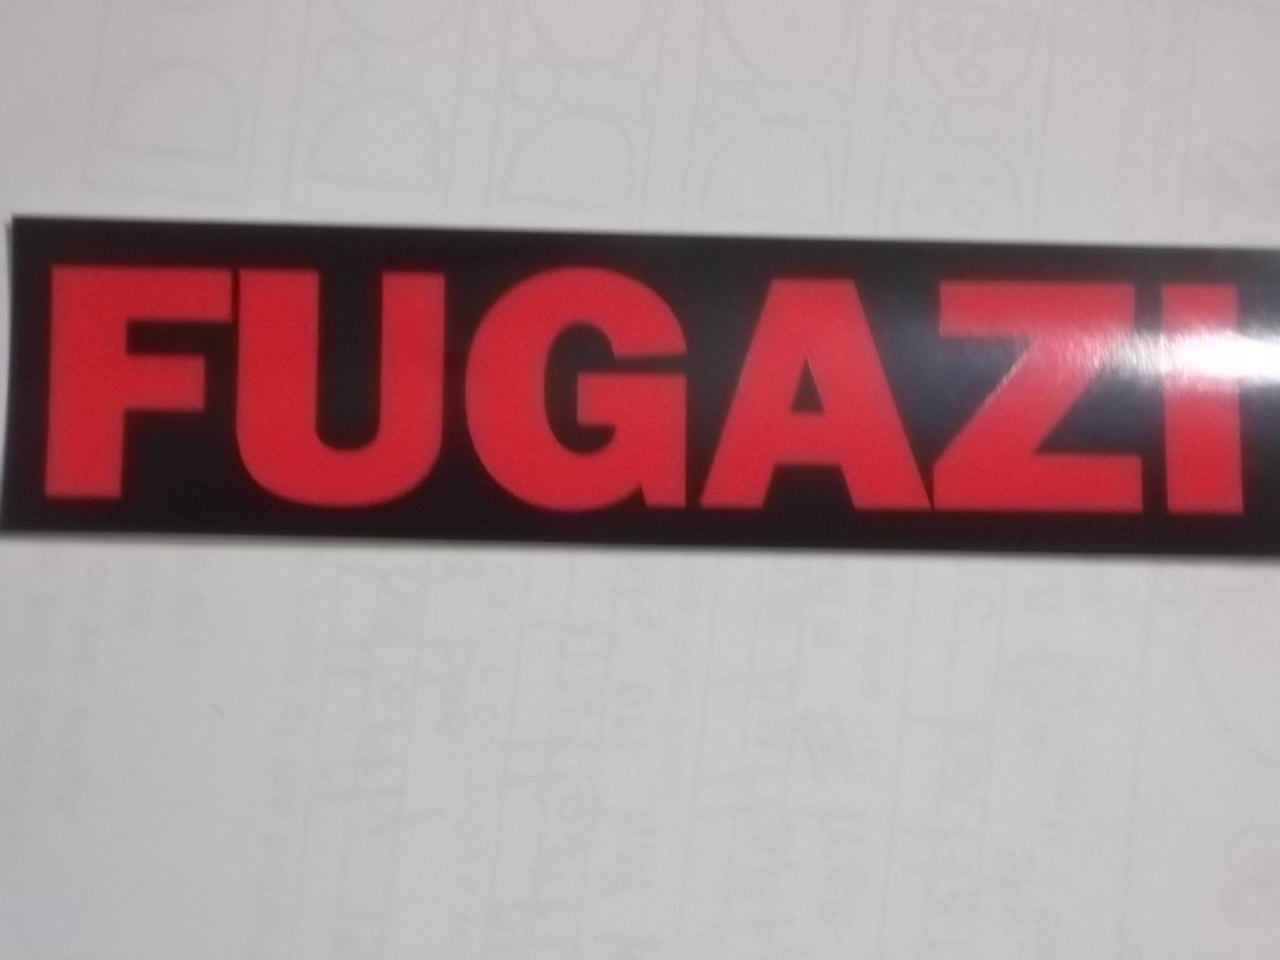 FUGAZI - FUGAZI STICKER